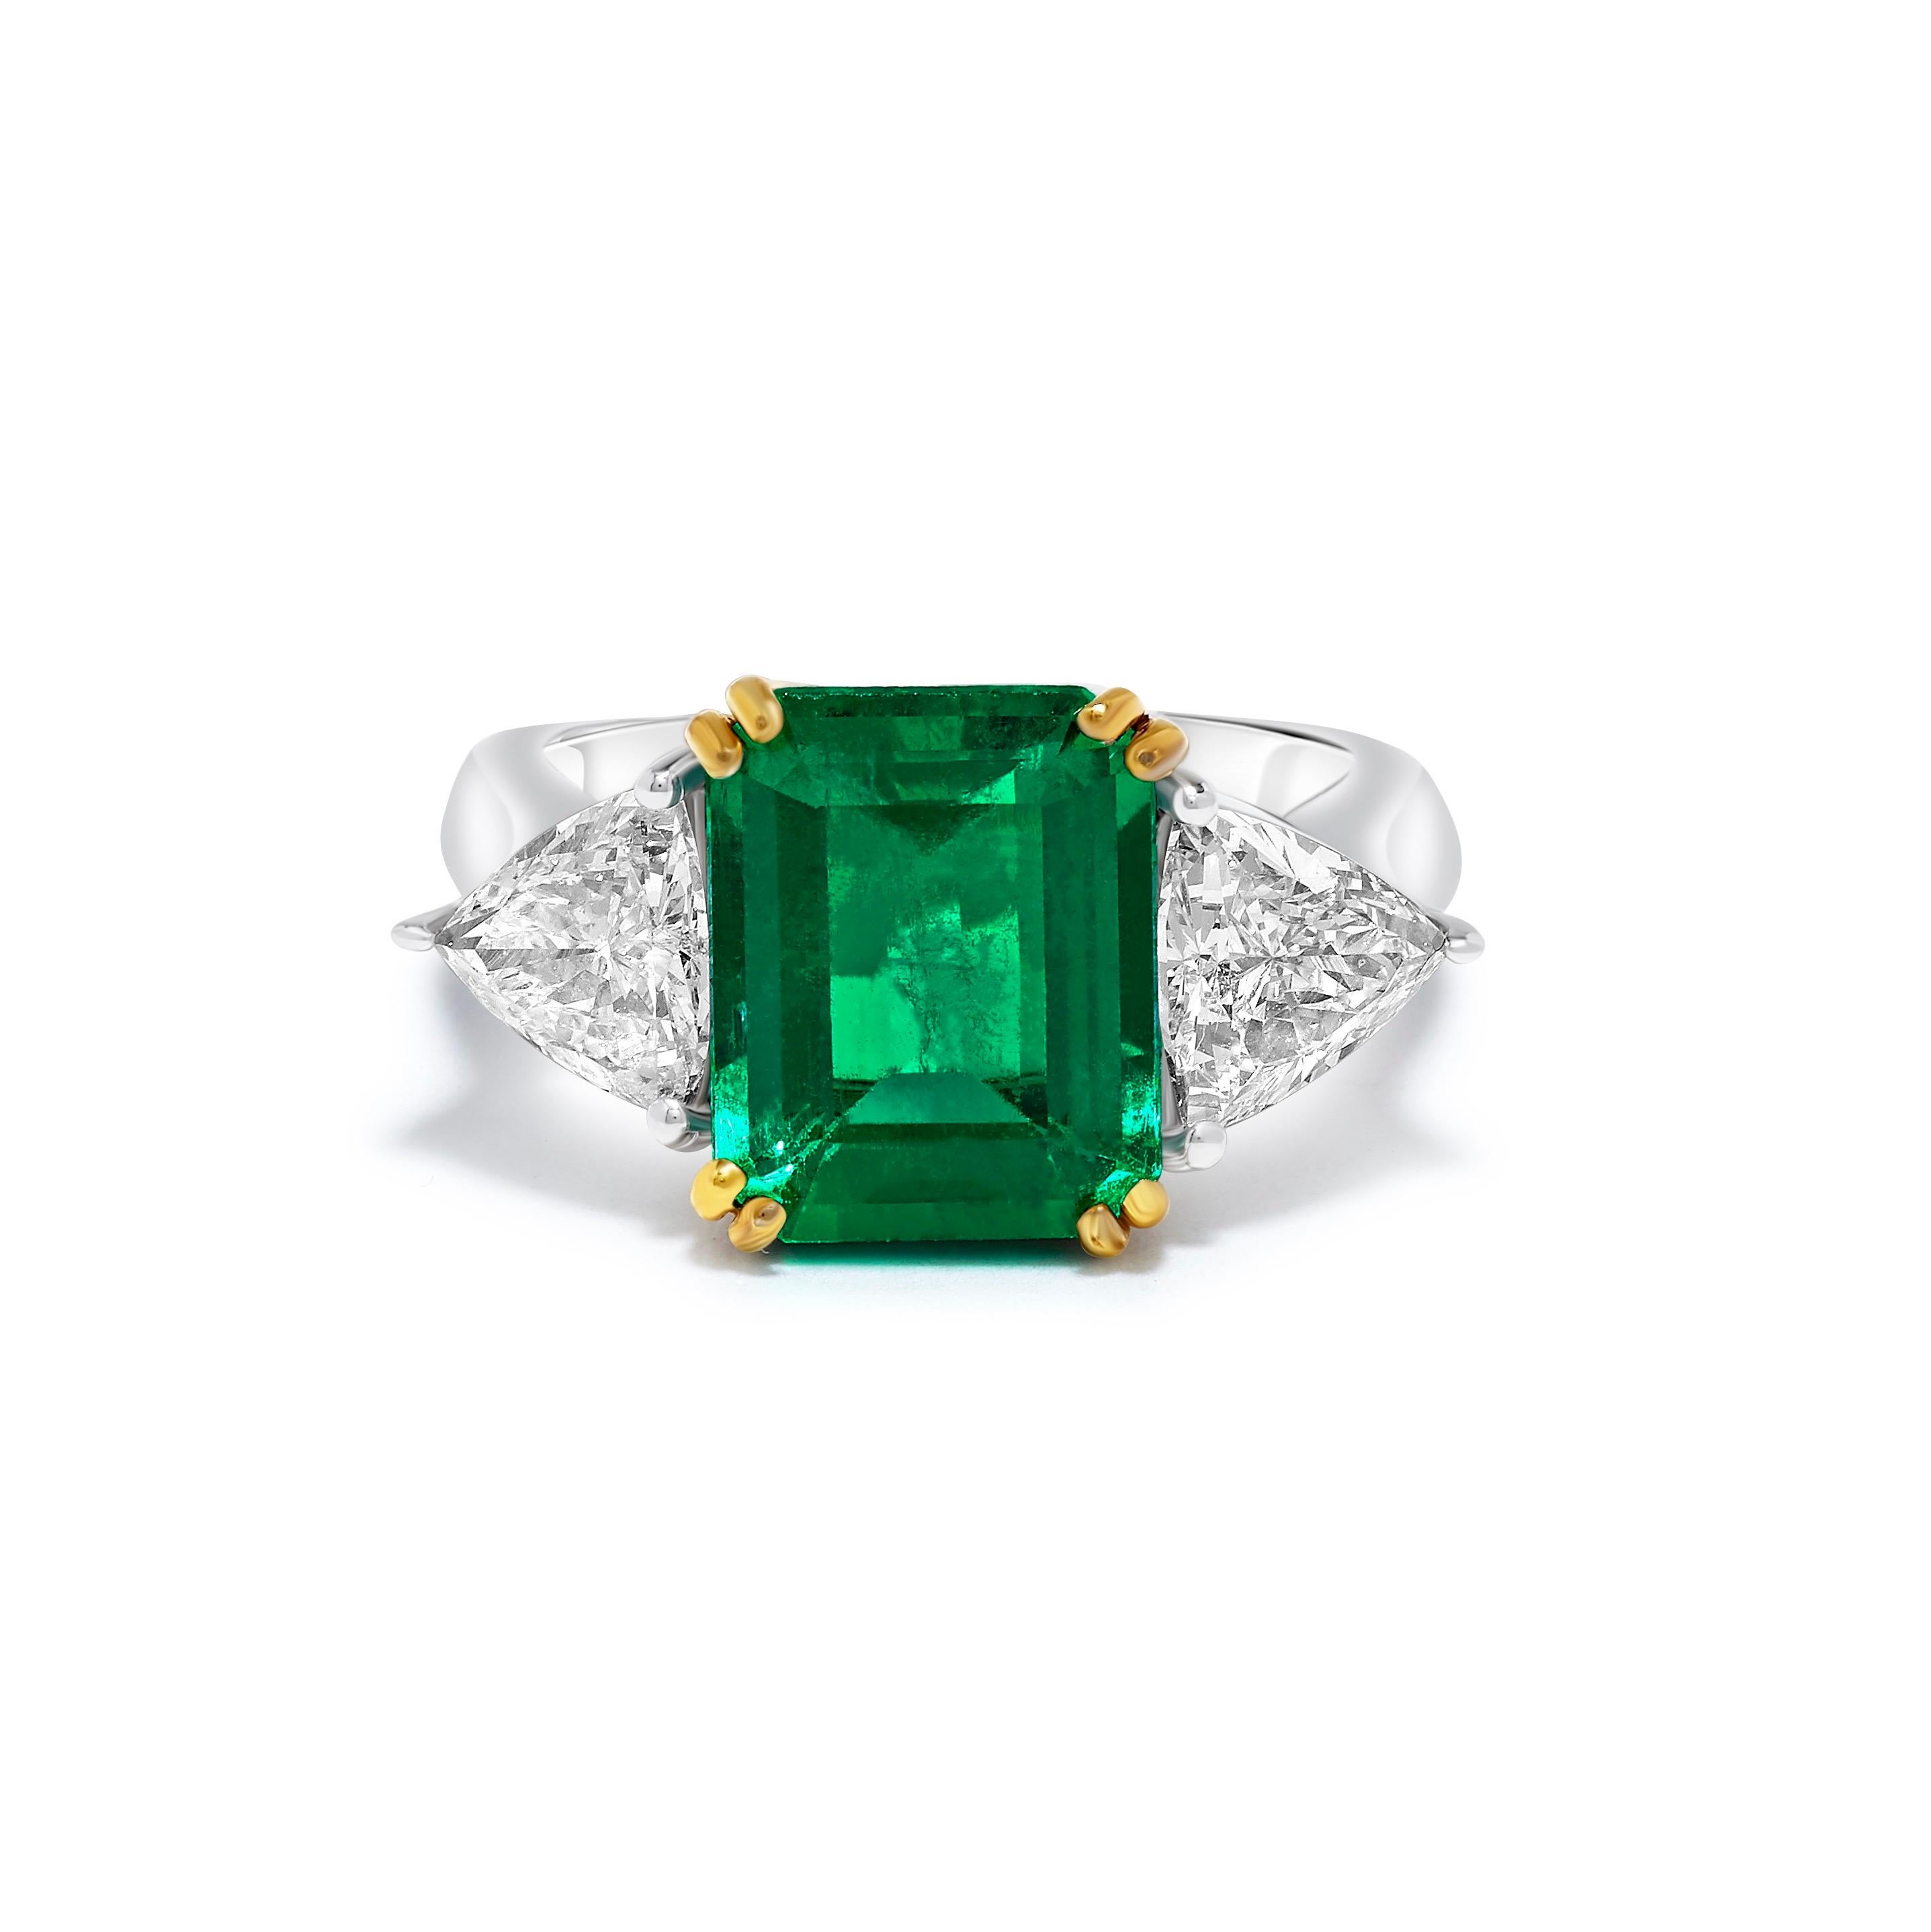 Aus dem Tresor von Emilio Jewelry New York,
Zentrum Smaragd super feiner Edelstein Smaragd: 4.42cts
Diamanten  1.60ct 
Bitte erkundigen Sie sich nach weiteren Einzelheiten. 